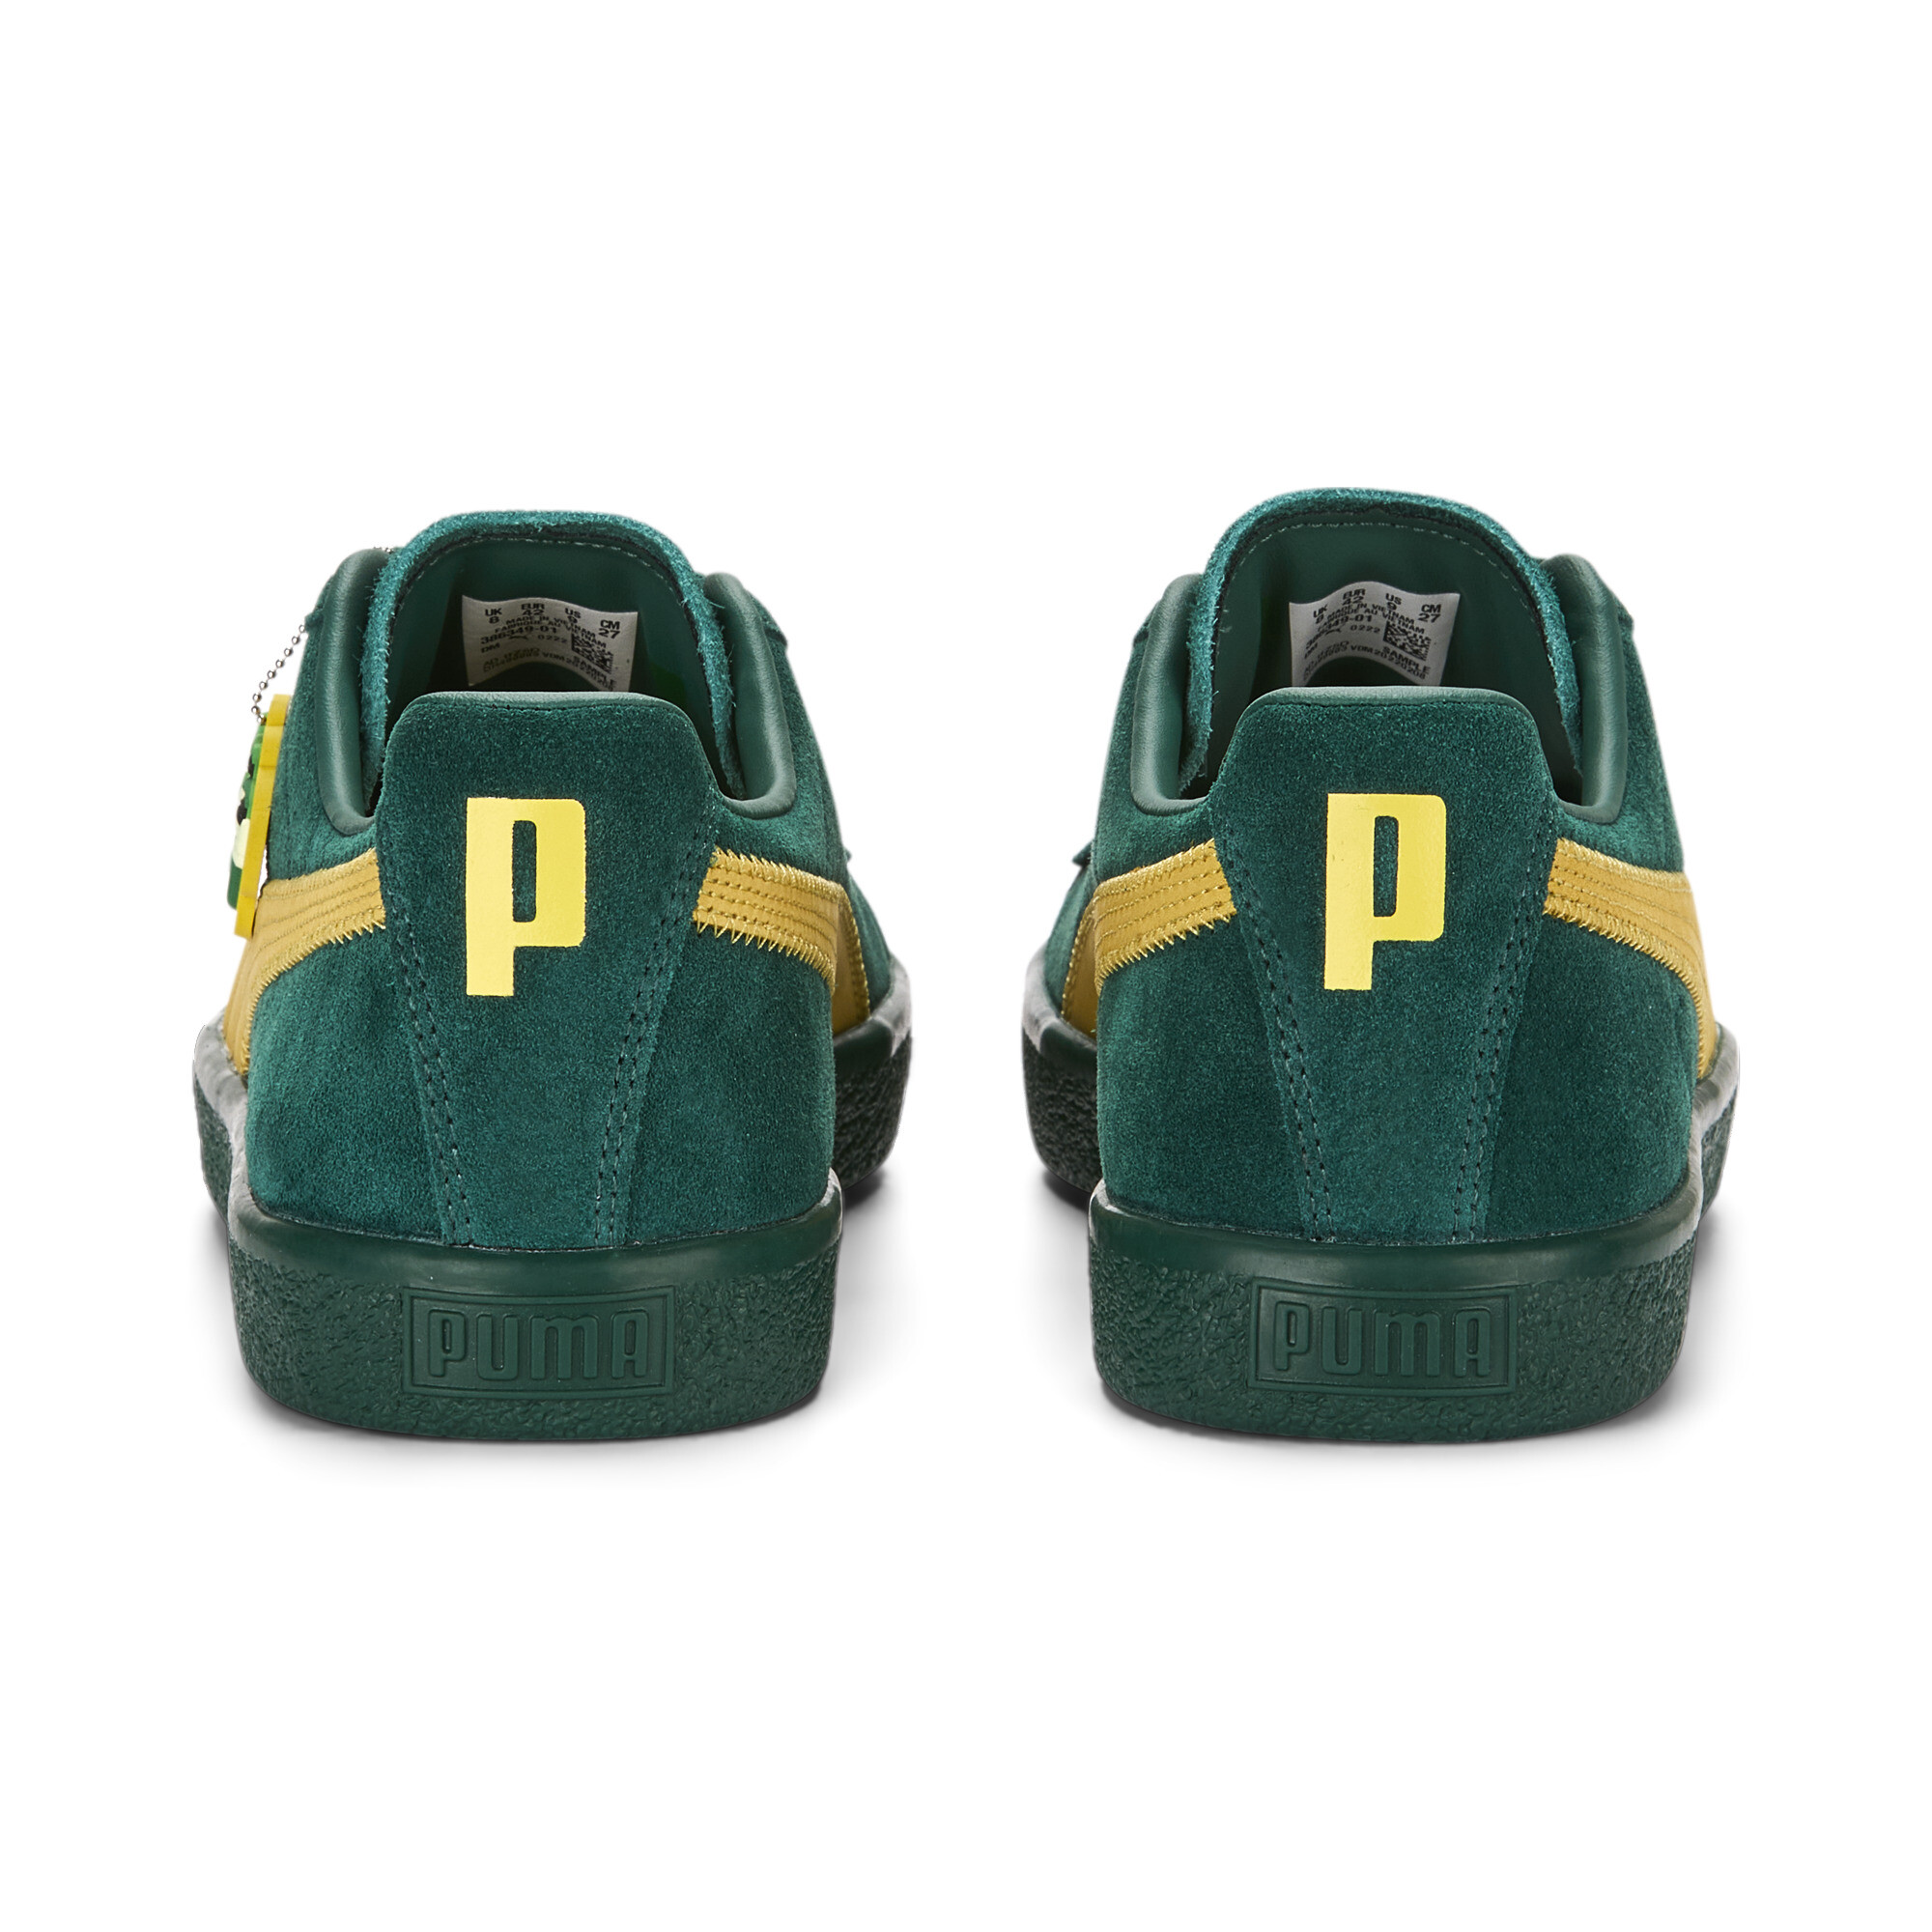 Men's Clyde Super PUMA Sneakers In 40 - Green, Size EU